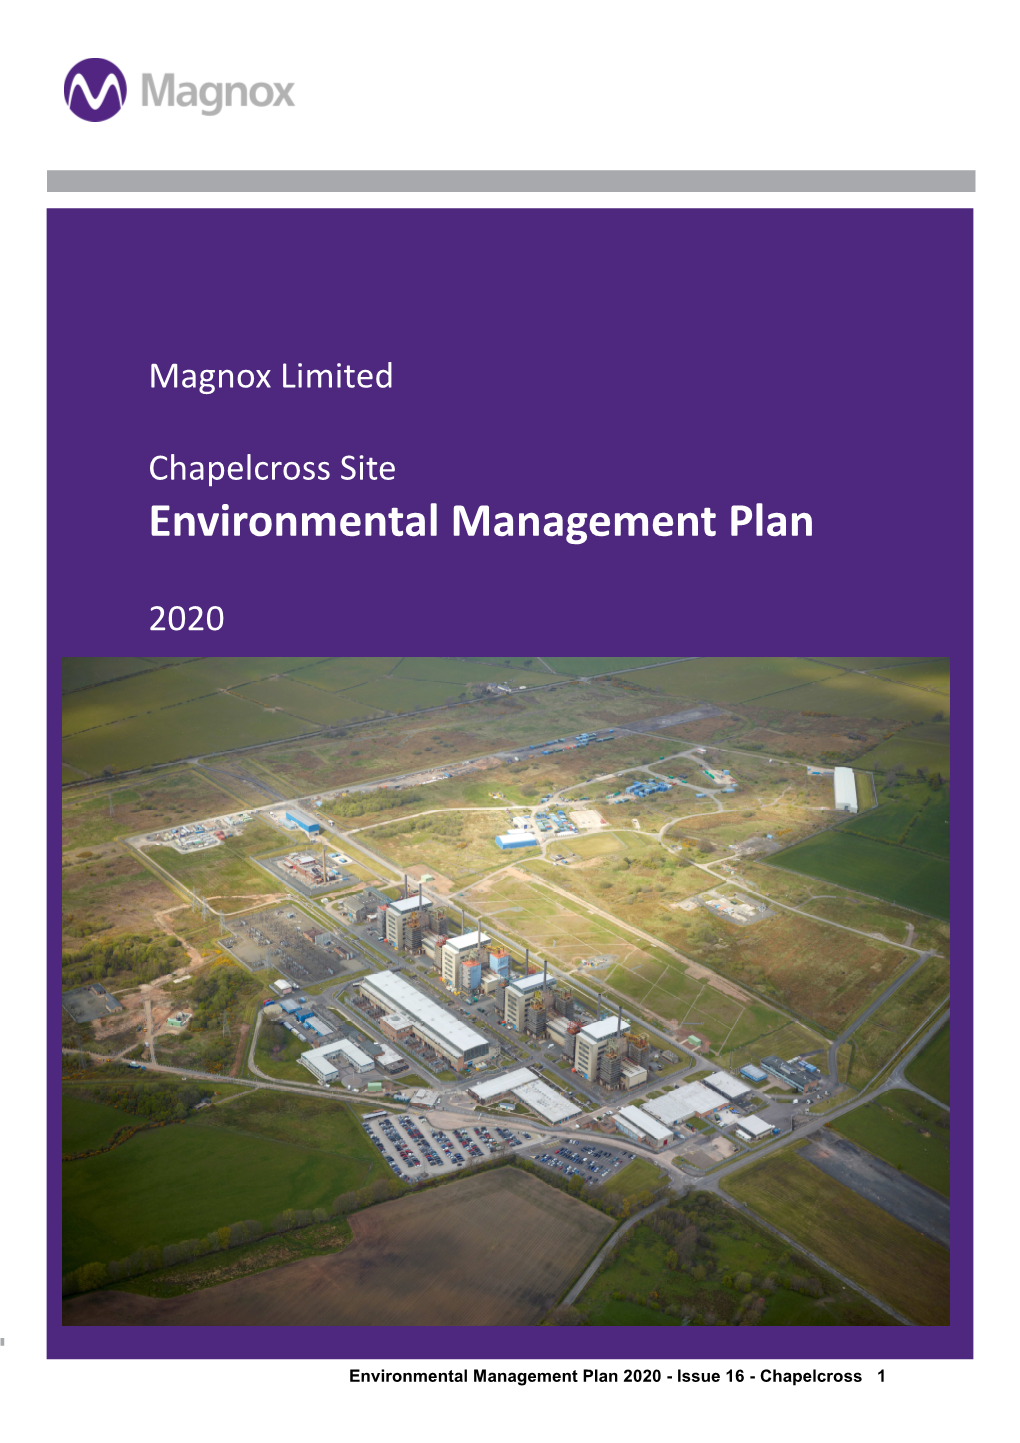 Chapelcross Site Environmental Management Plan